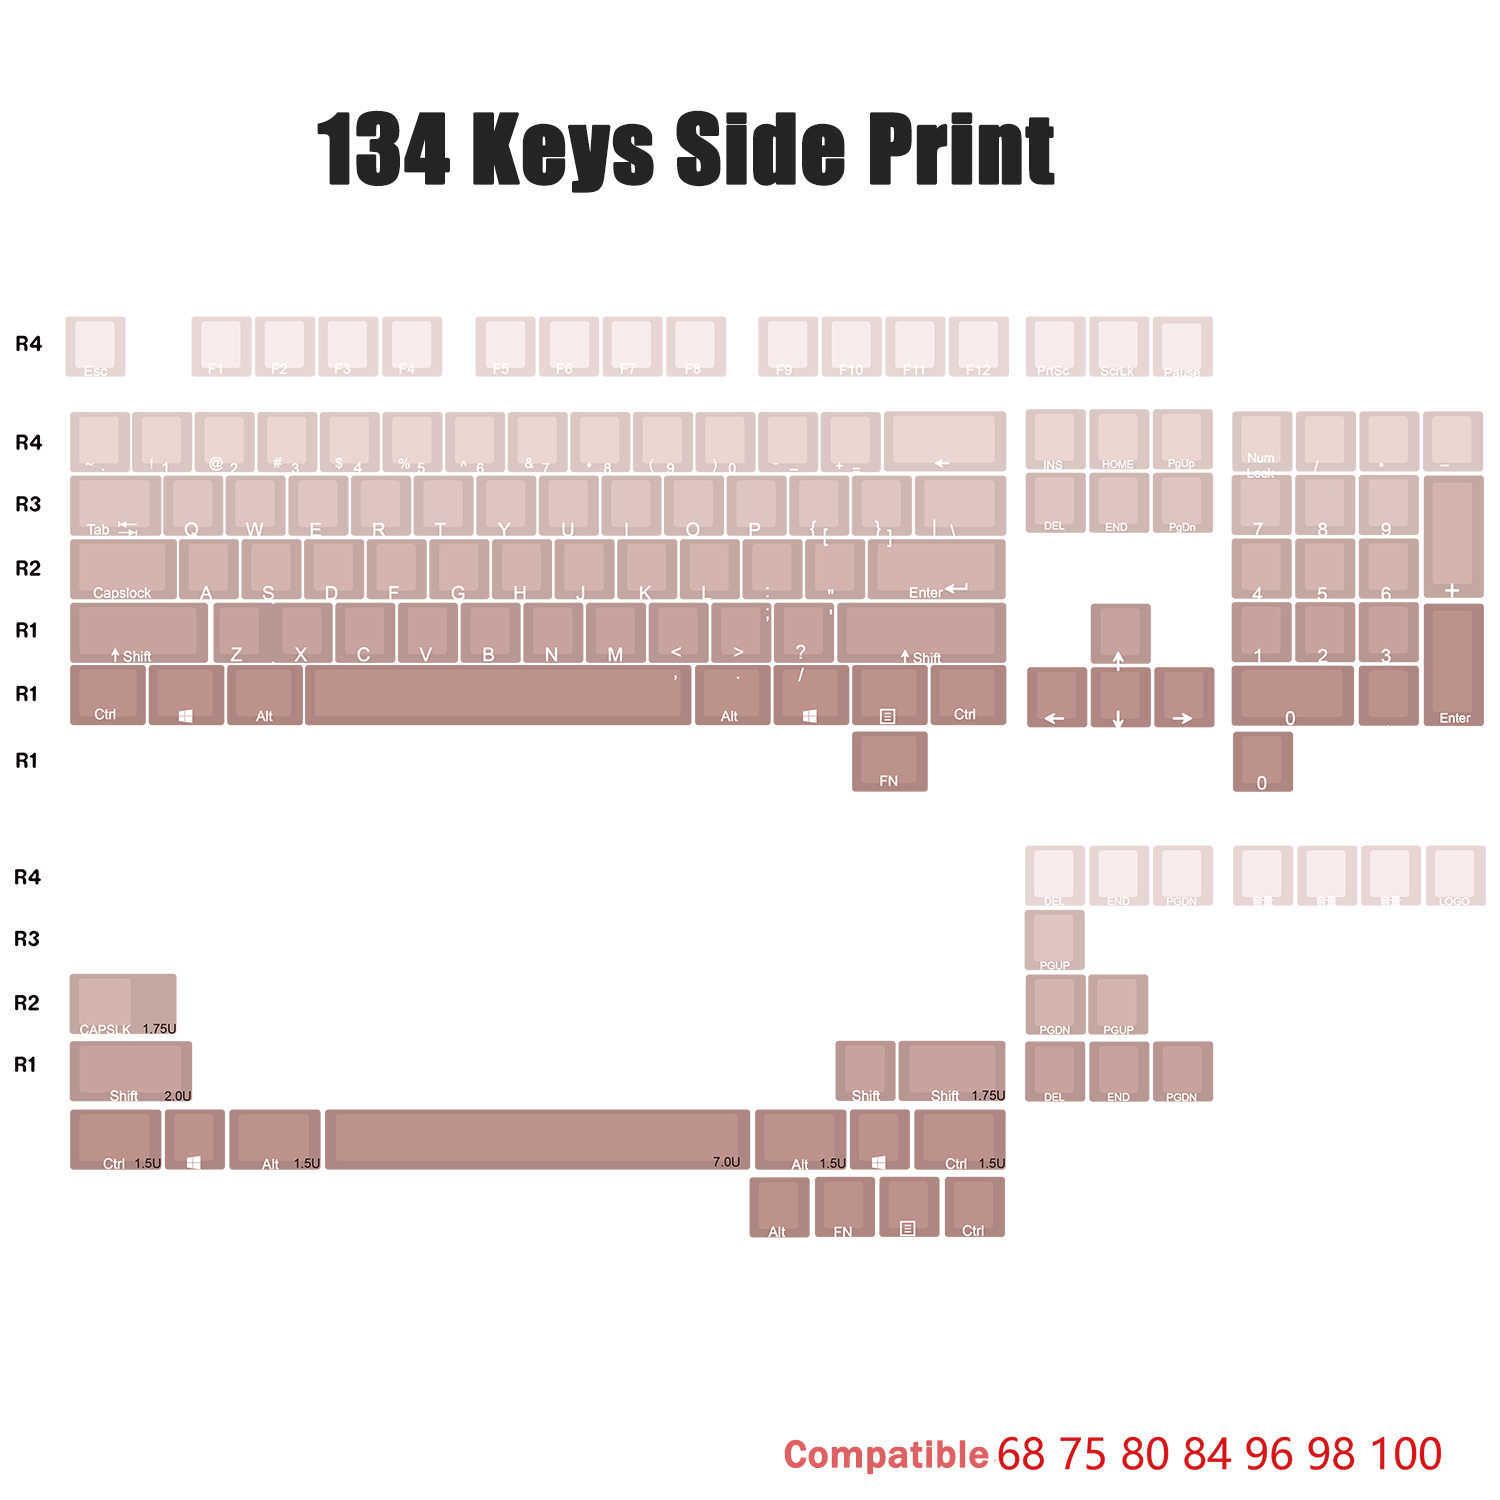 Impresión lateral de 134 kileyos